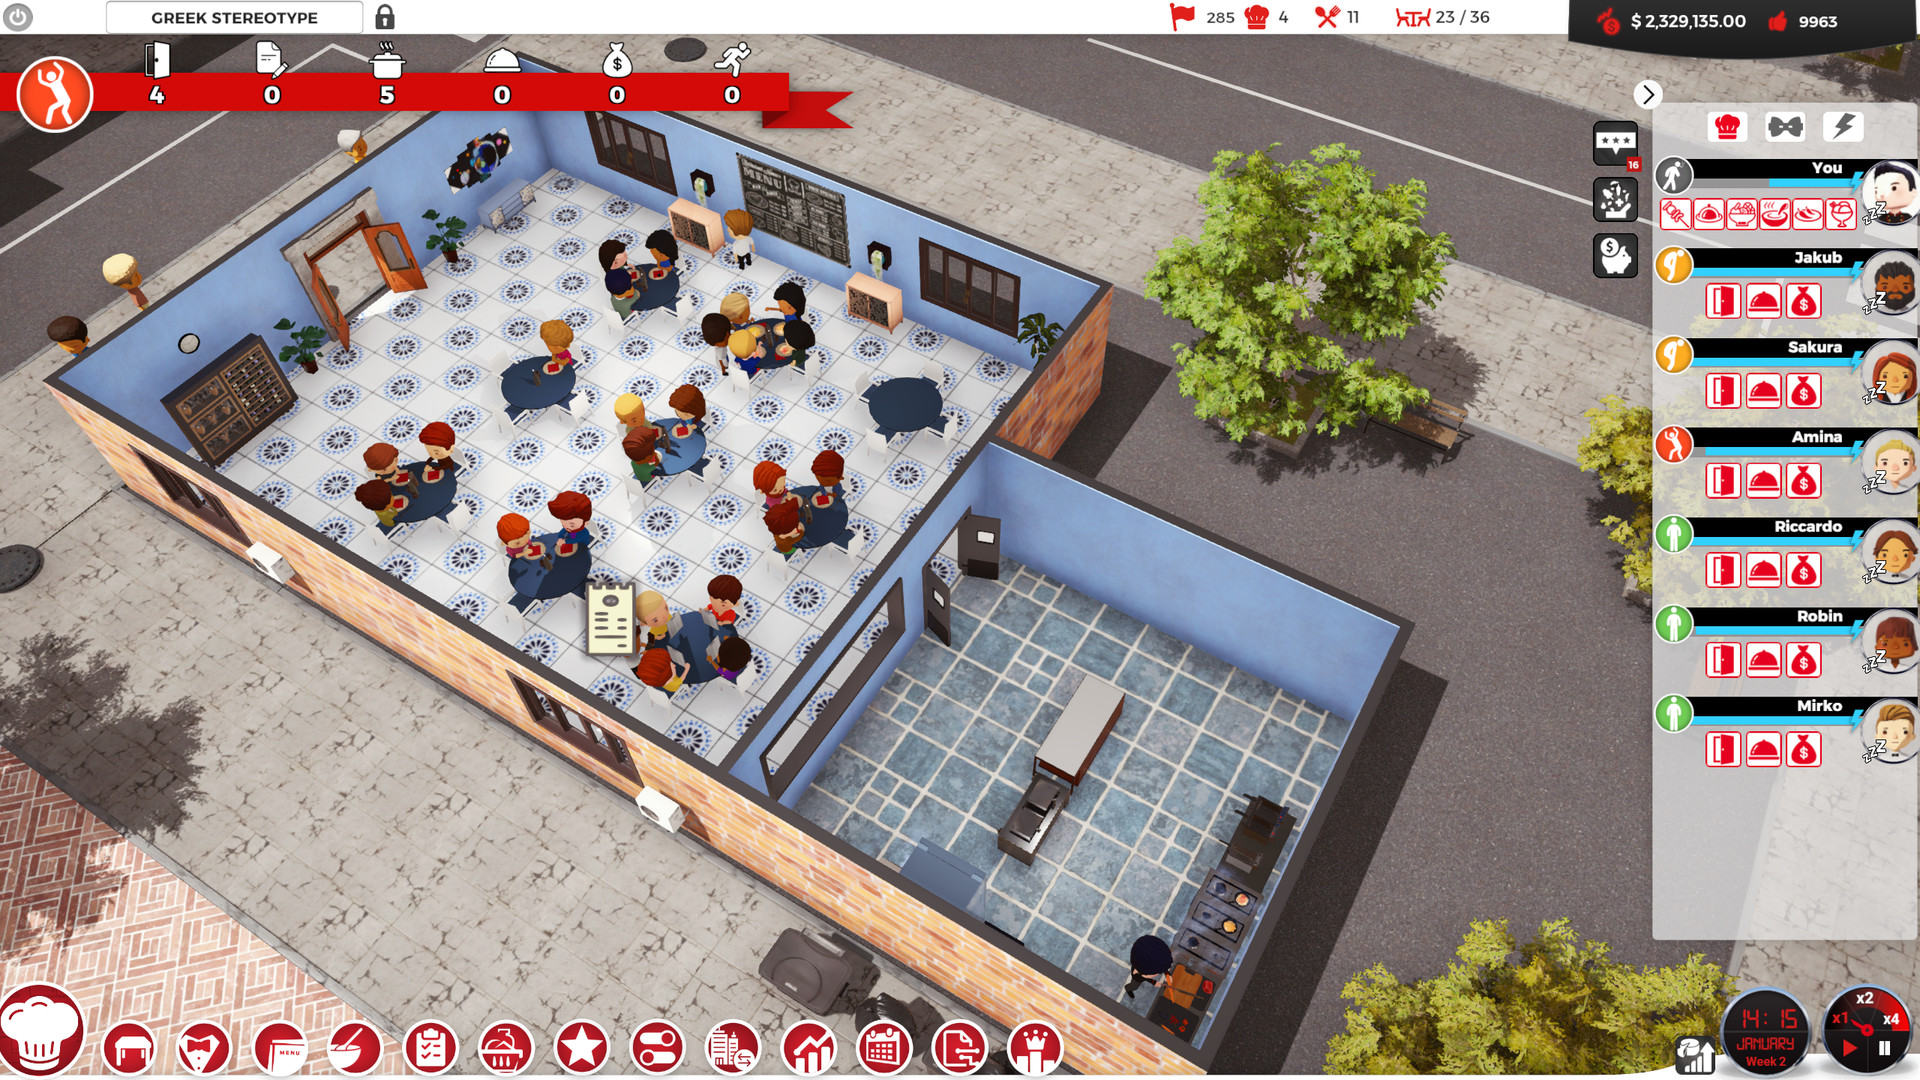 Chef A Restaurant Tycoon Game On Steam - best restaurant games in roblox